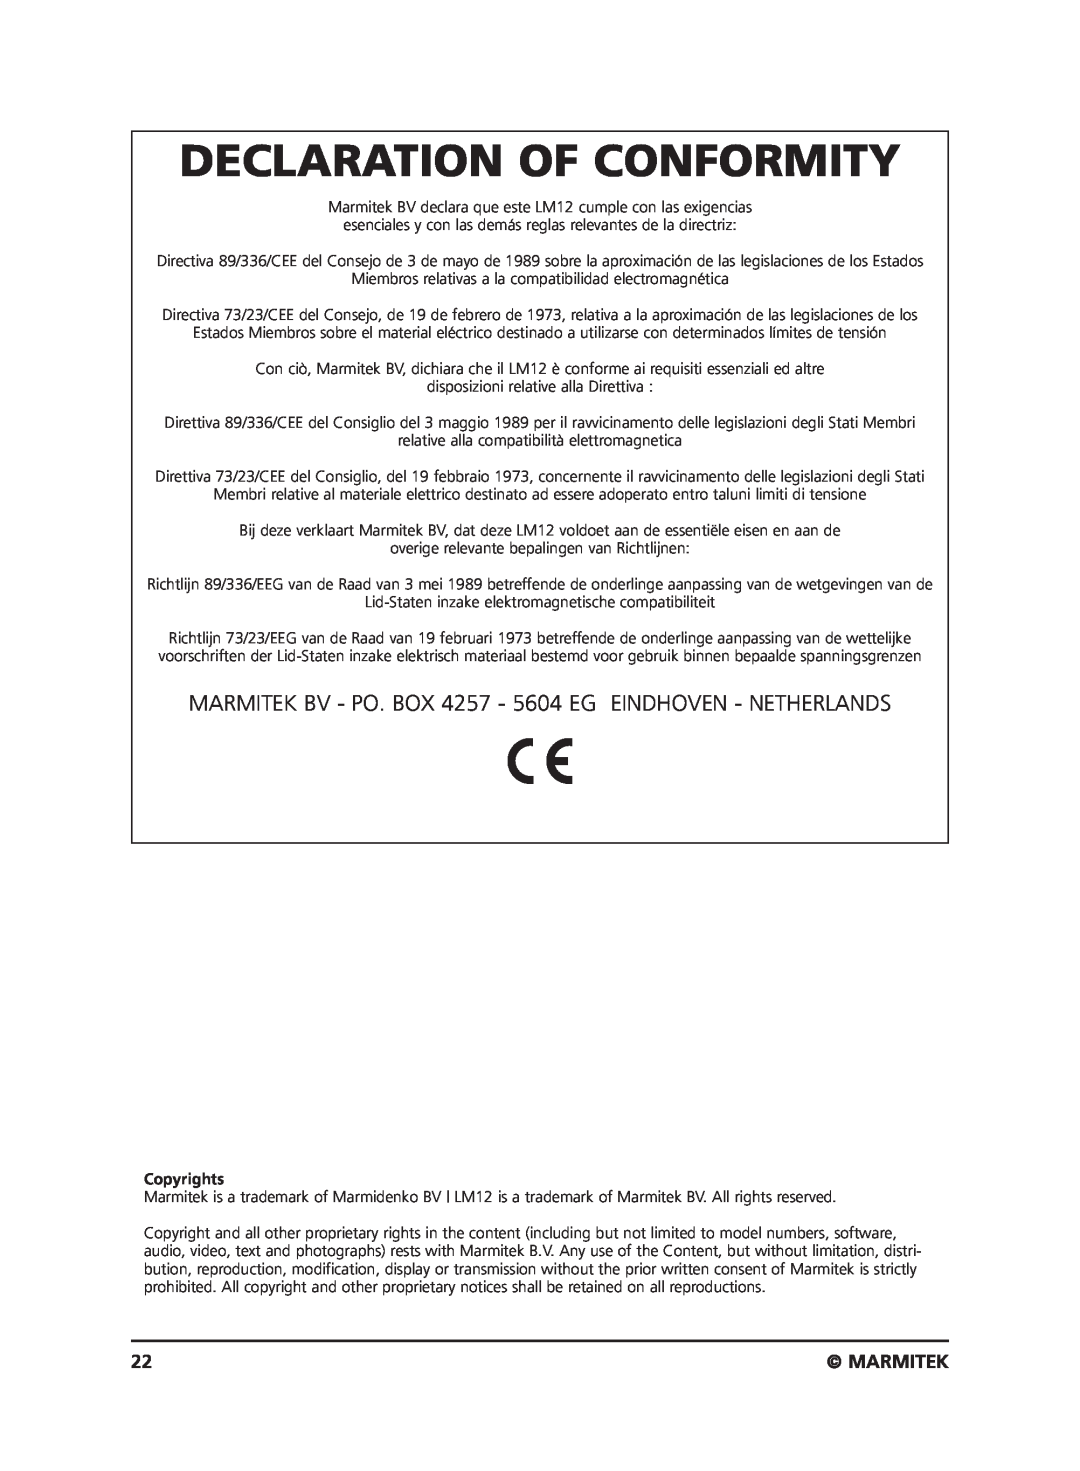 Marmitek LM12 user manual Declaration Of Conformity, Marmitek, Copyrights 